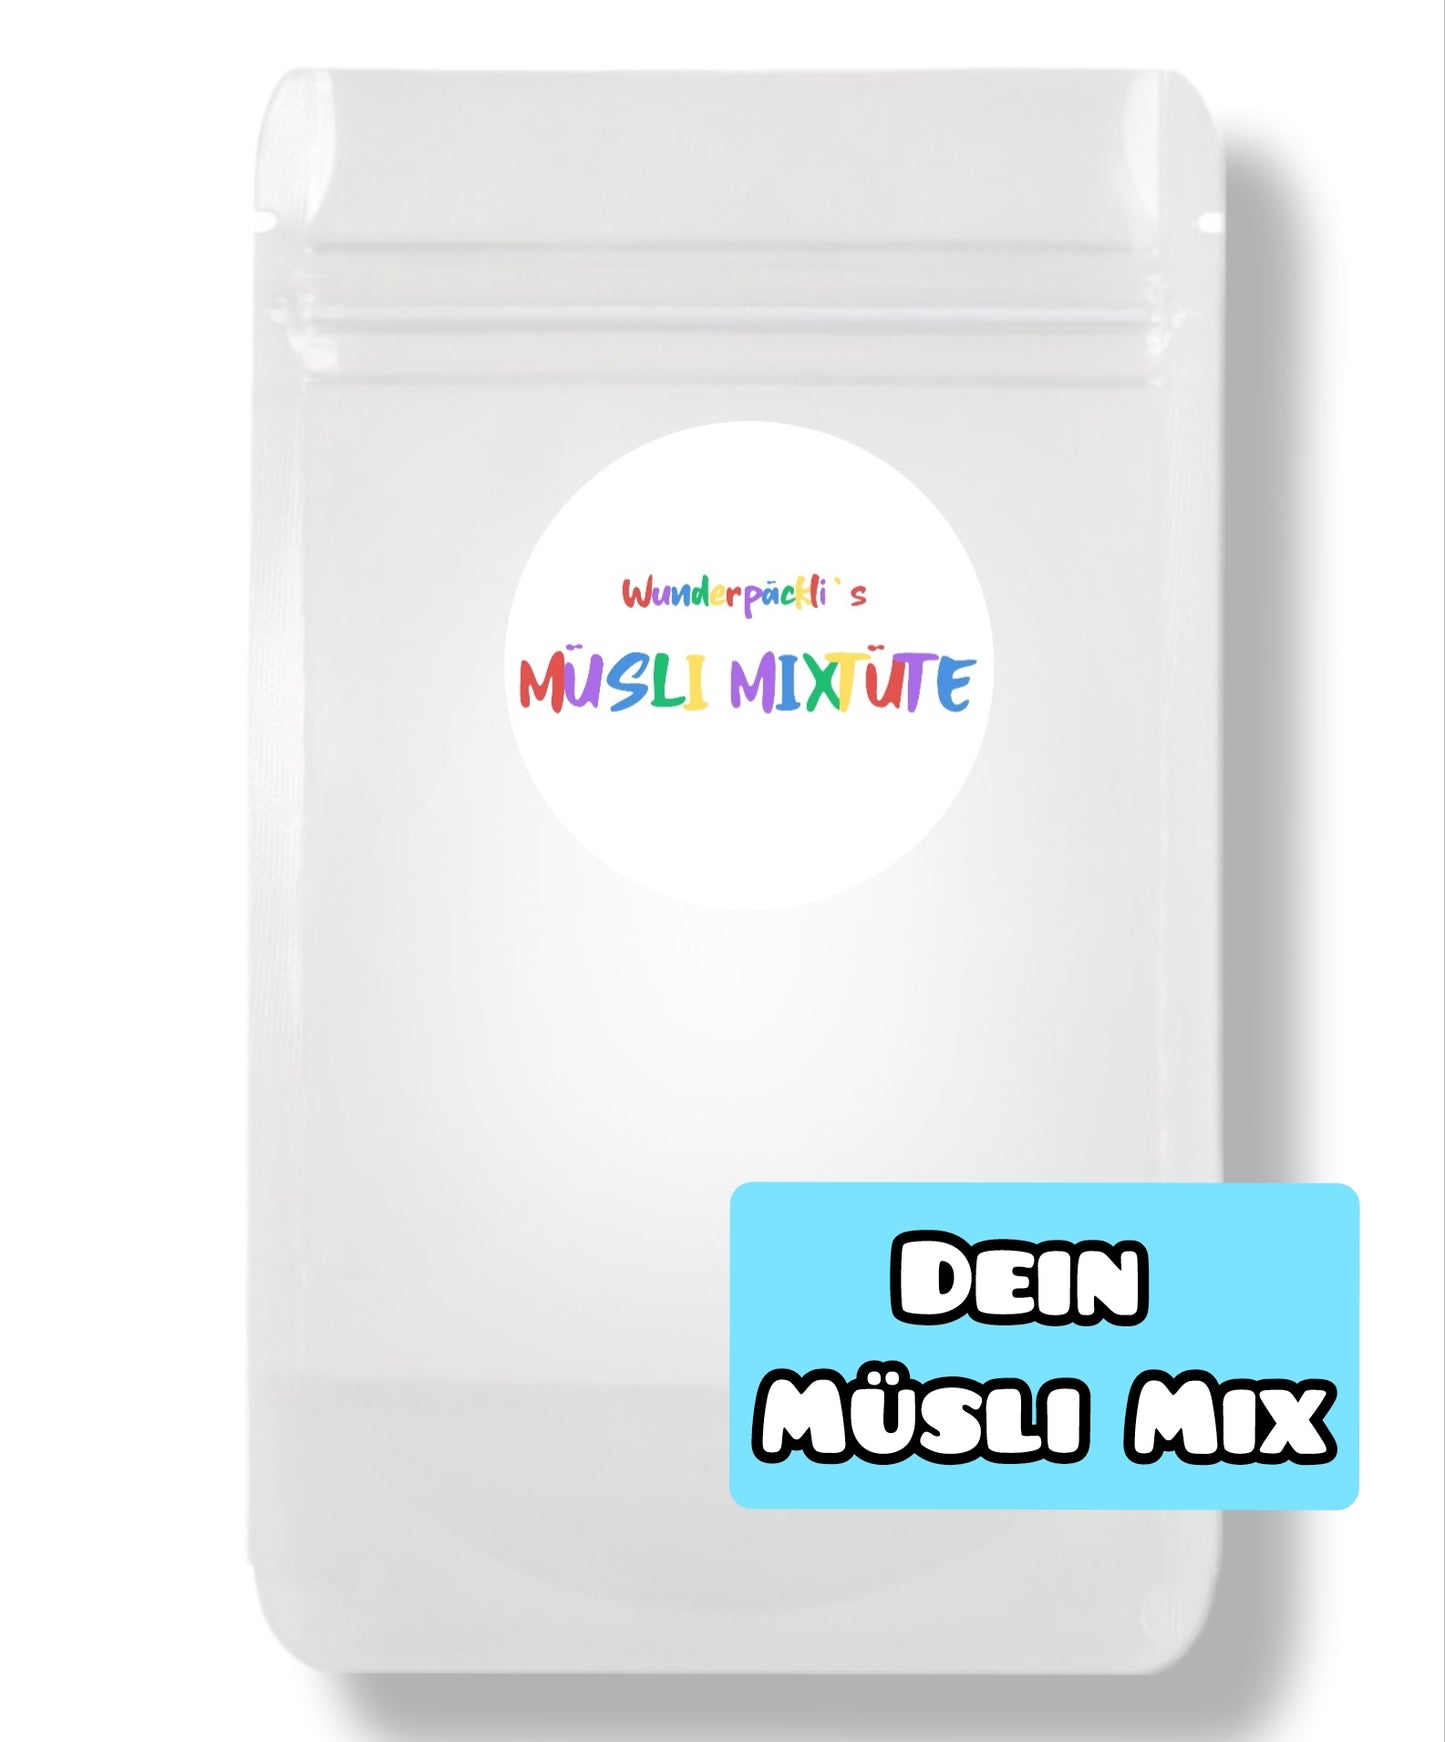 Wunsch Müsli Mix Tüte 460gramm (Achtung, Lieferzeit bis zu 5 Werkstagen)